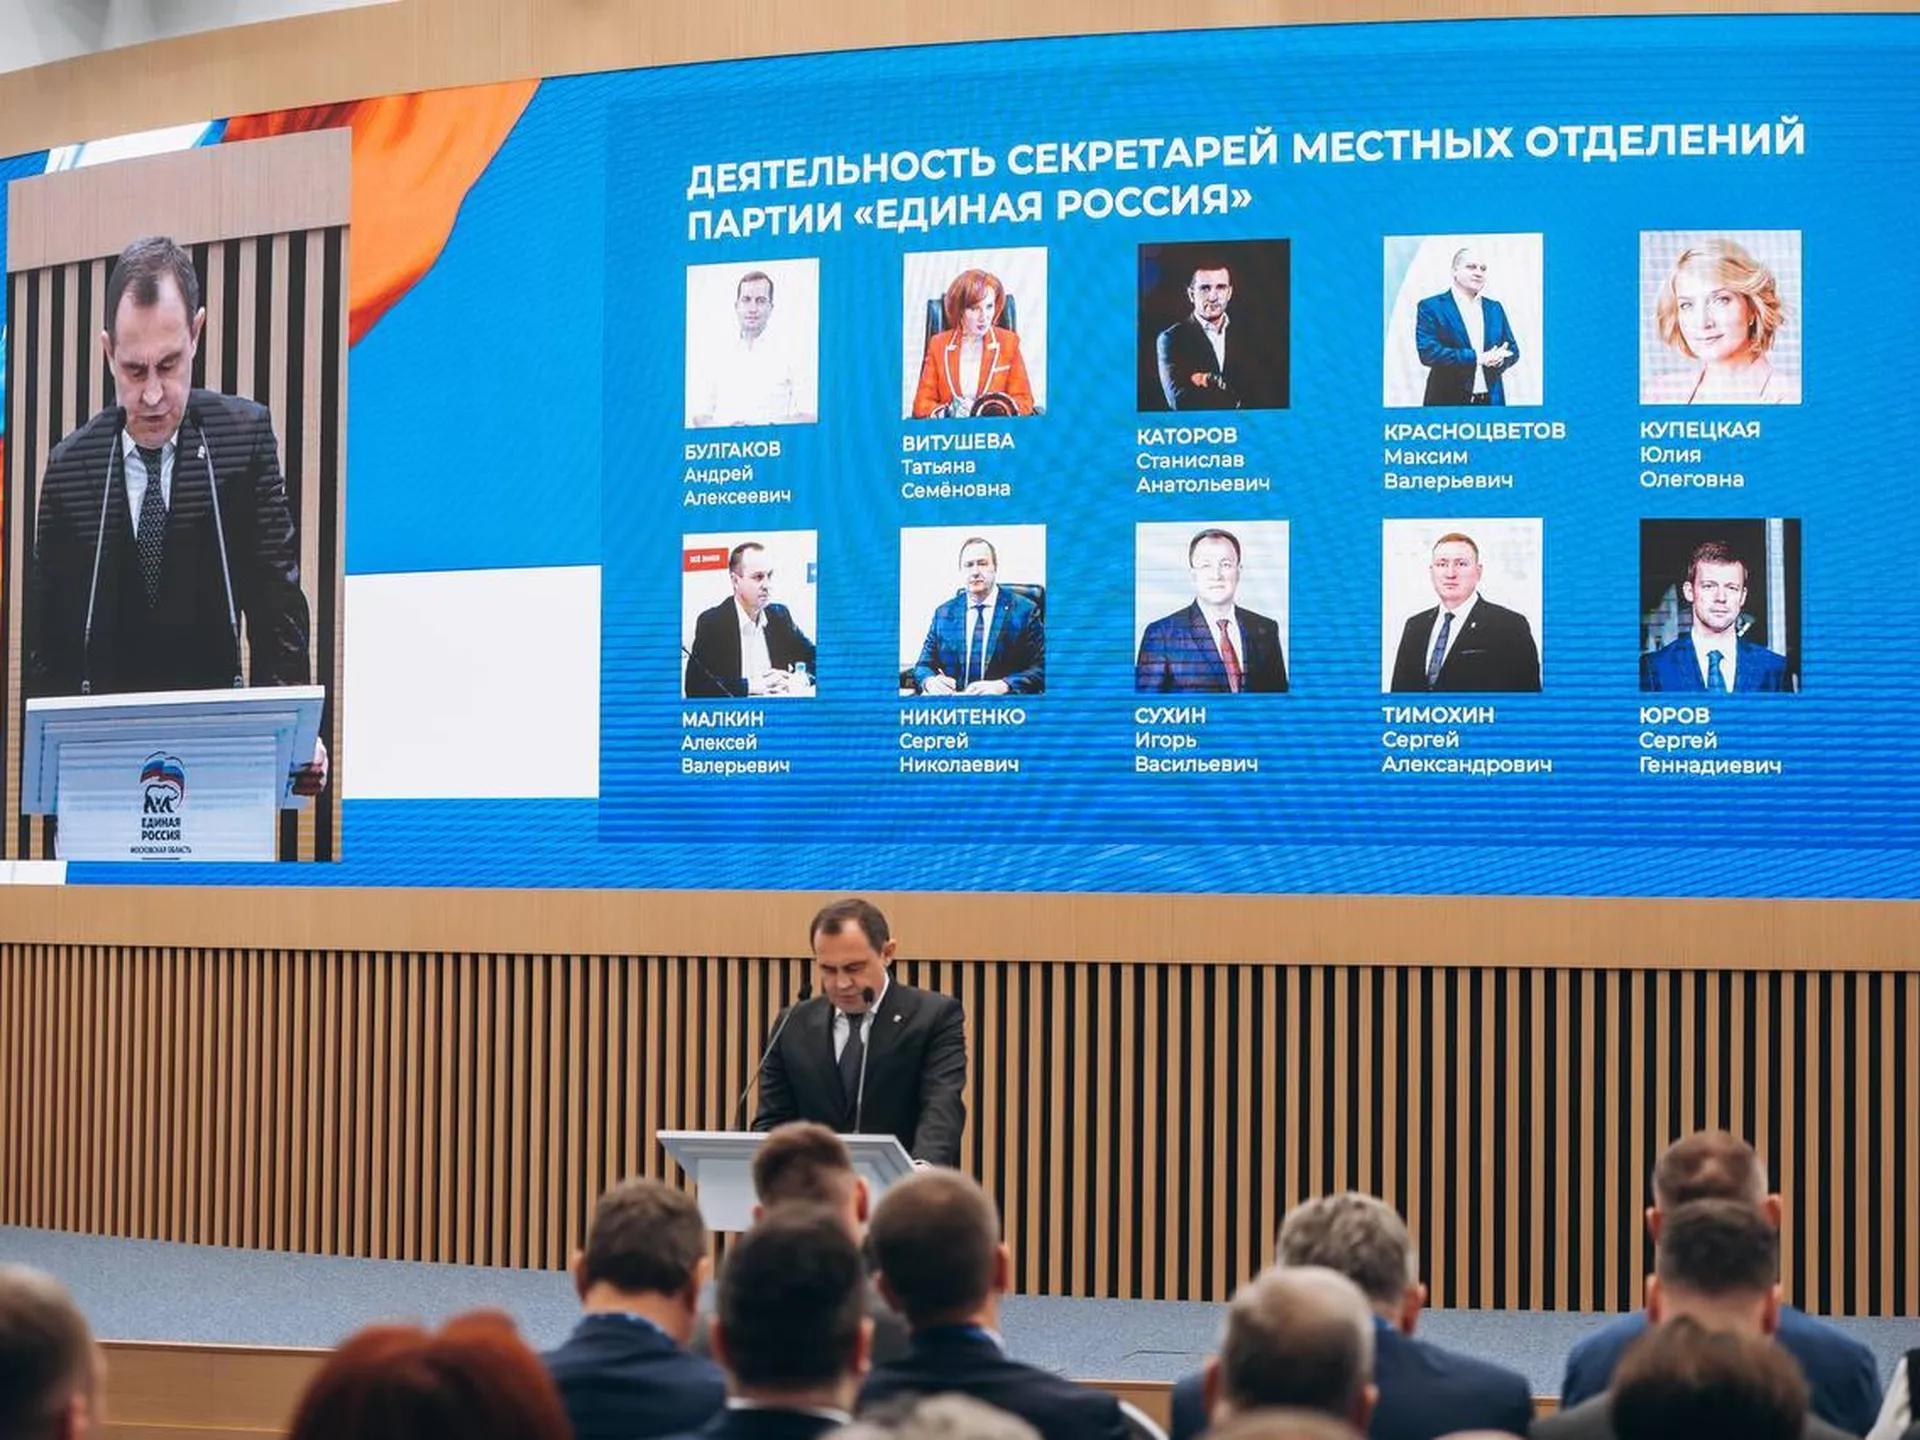 Конференция "Единой России": местное отделение партии в Реутове вошло в десятку лидеров